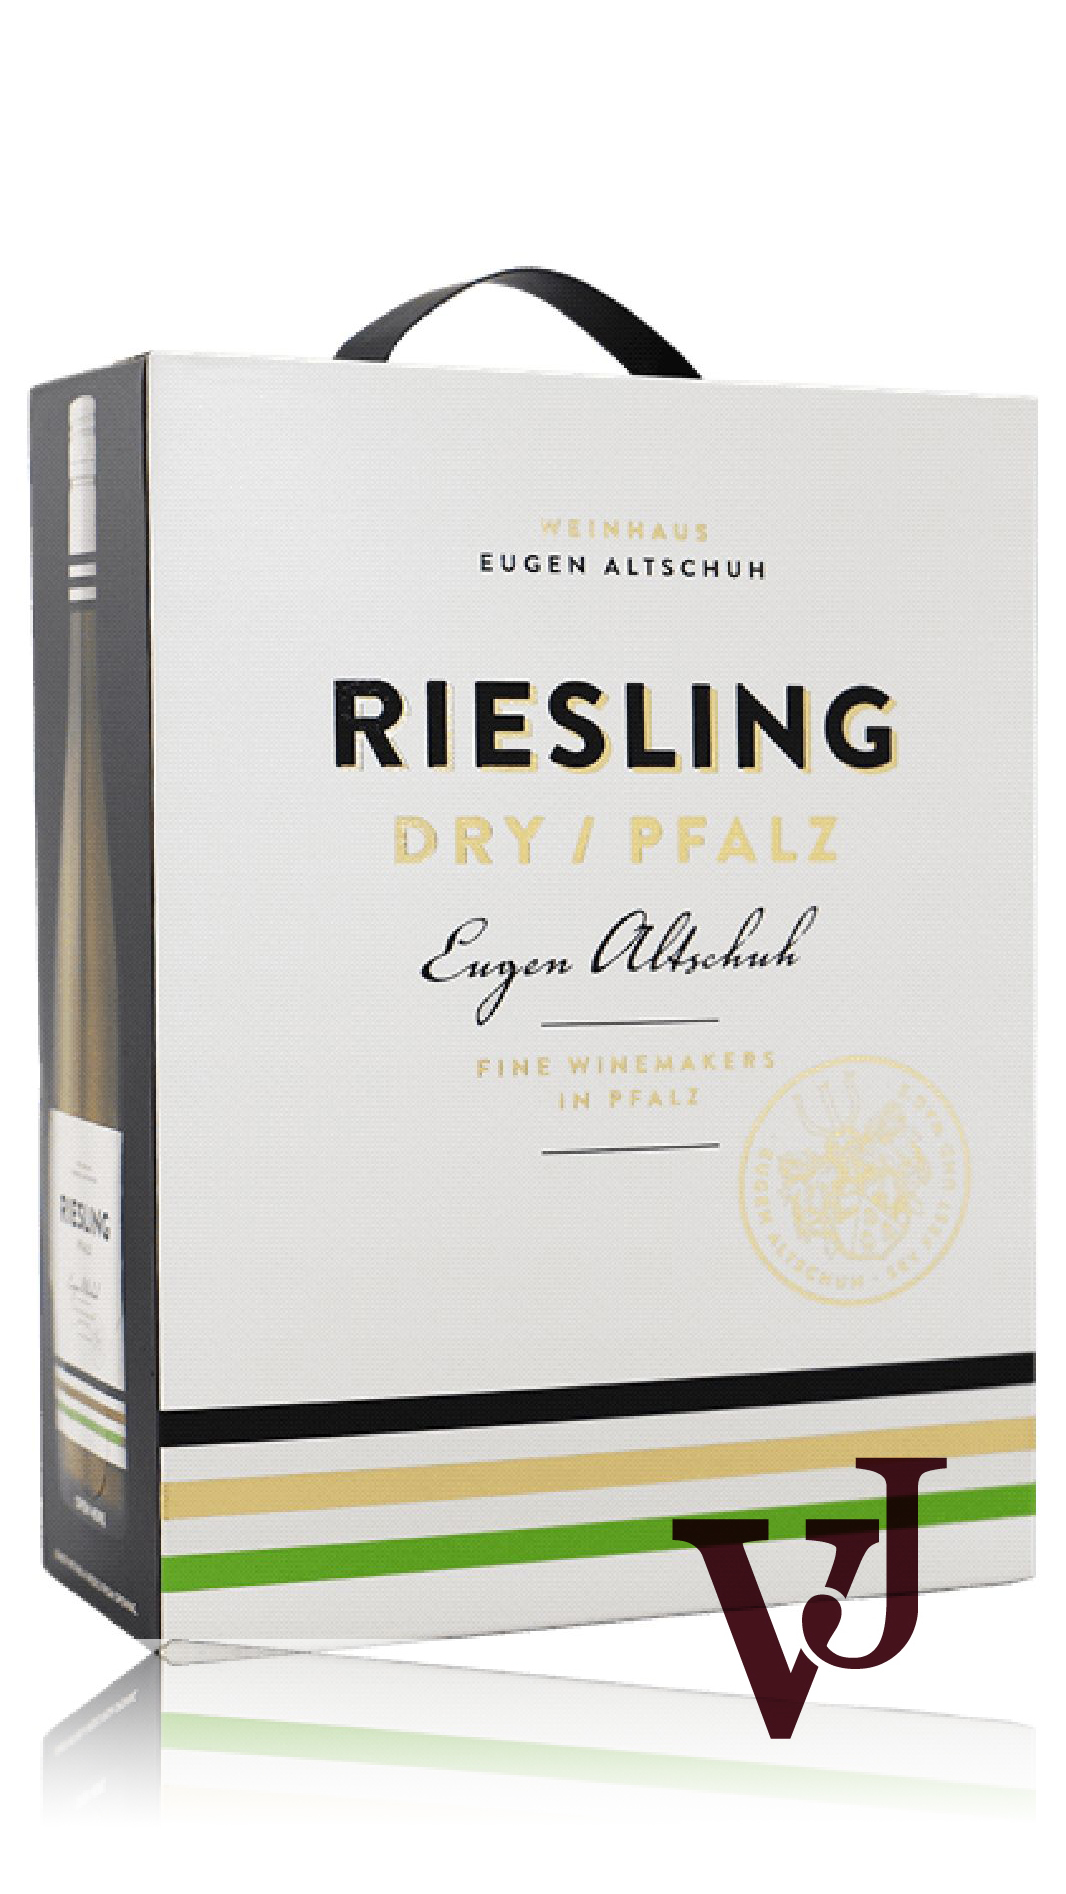 Vitt Vin - Eugen Altschuh Pfalz Riesling Dry artikel nummer 548708 från producenten Weingau Eugen Altschuh från området Tyskland